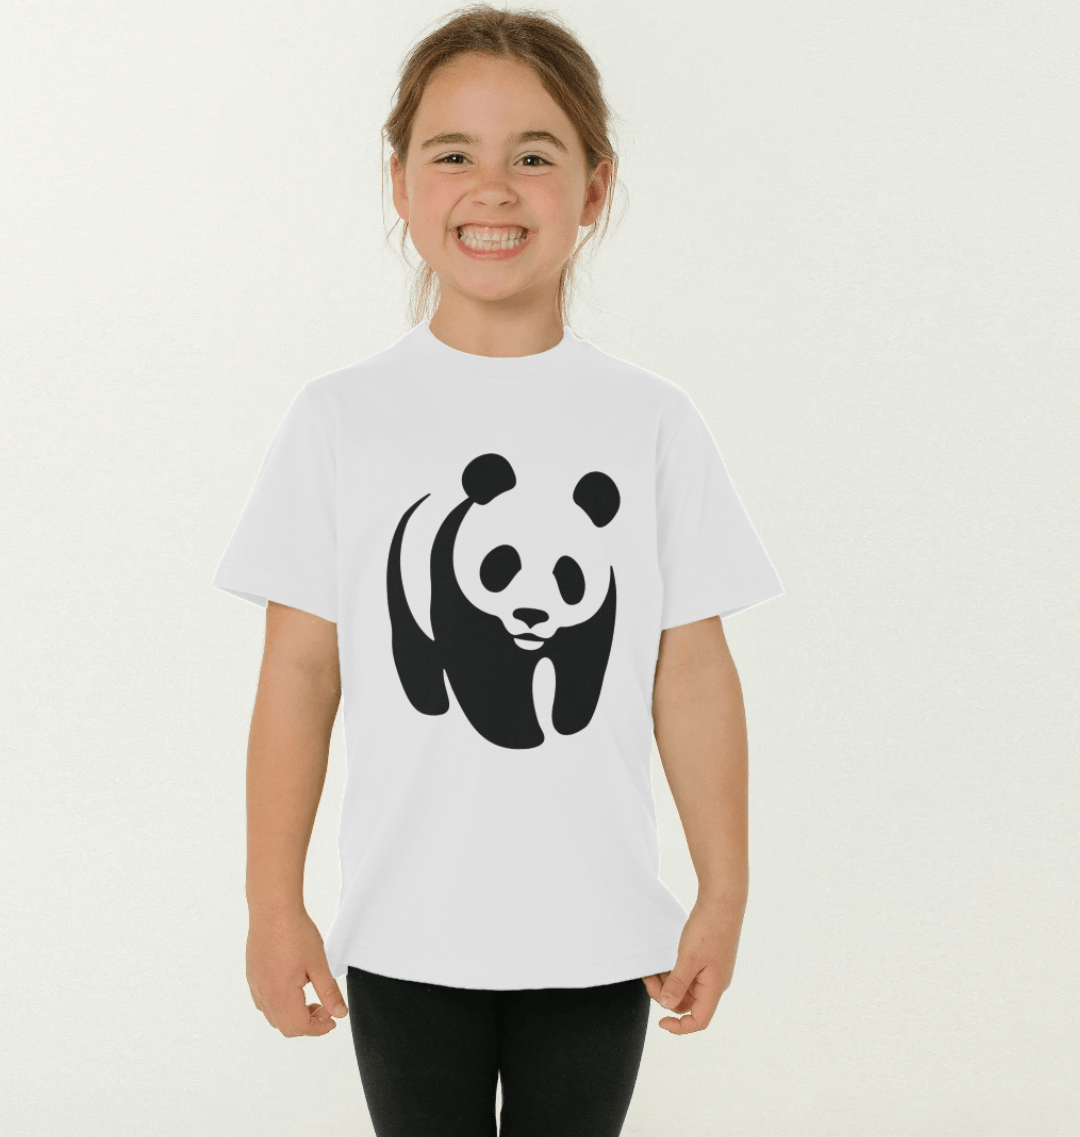 LOGO Toddler T-shirt